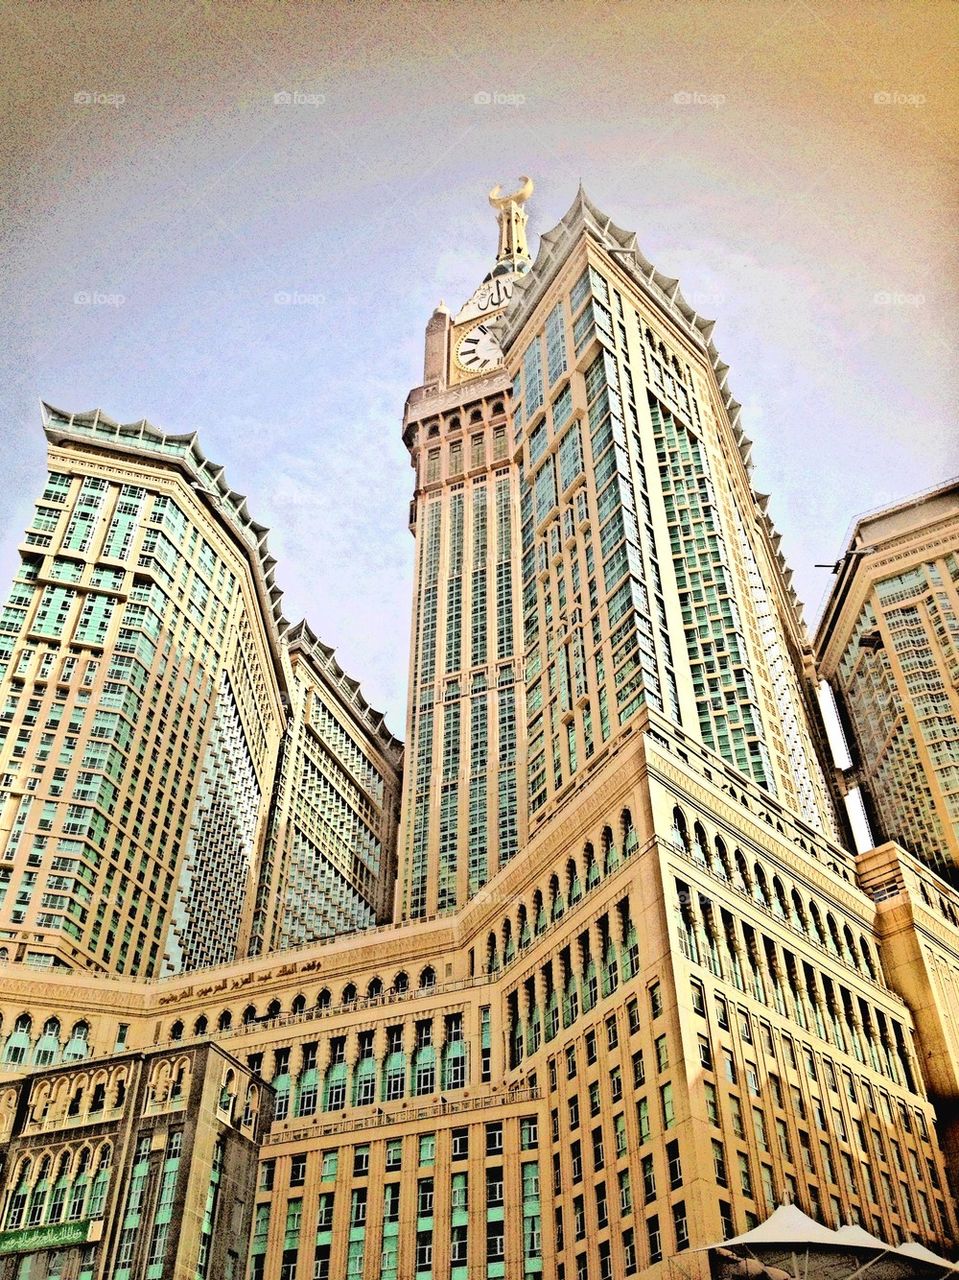 Makkah clock tower